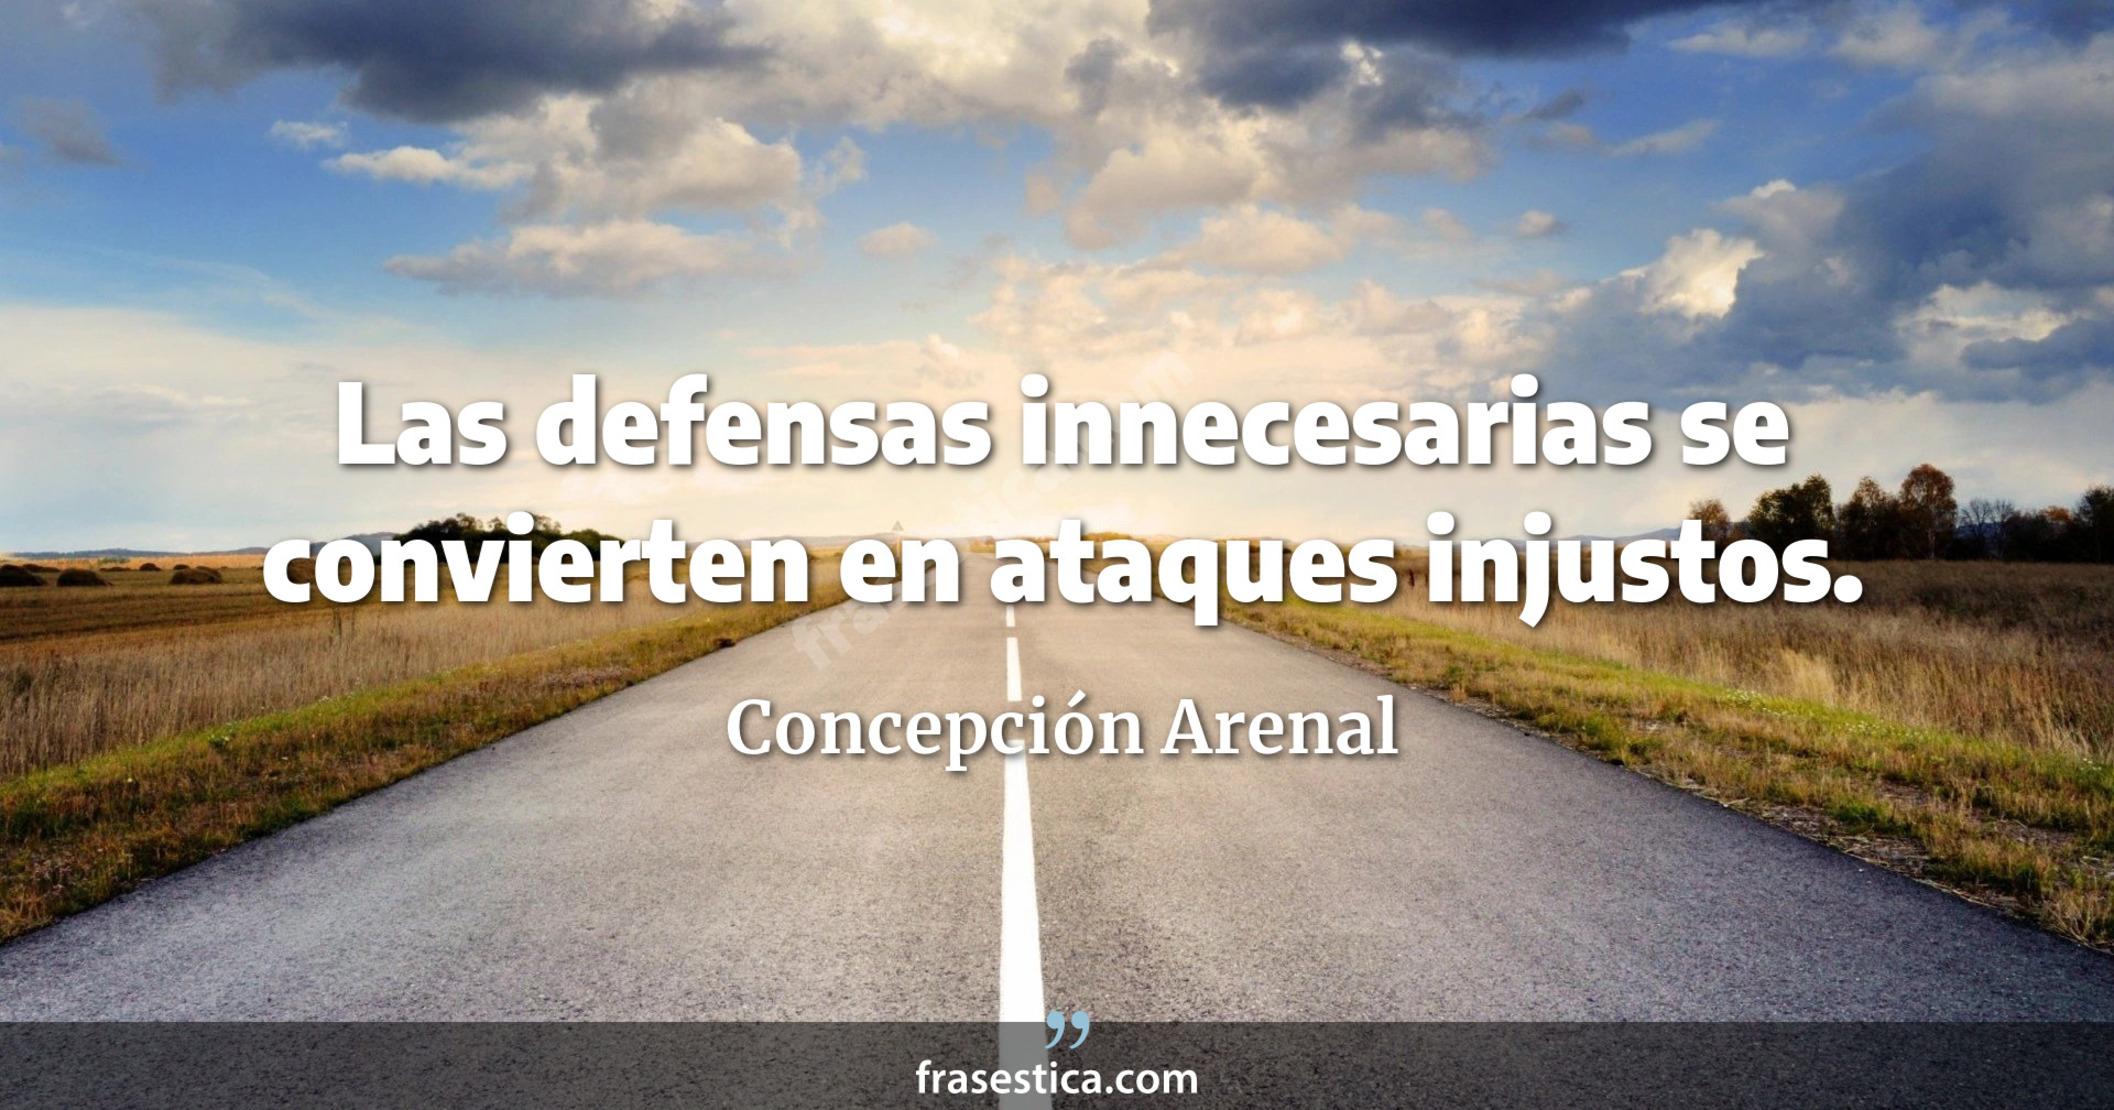 Las defensas innecesarias se convierten en ataques injustos. - Concepción Arenal